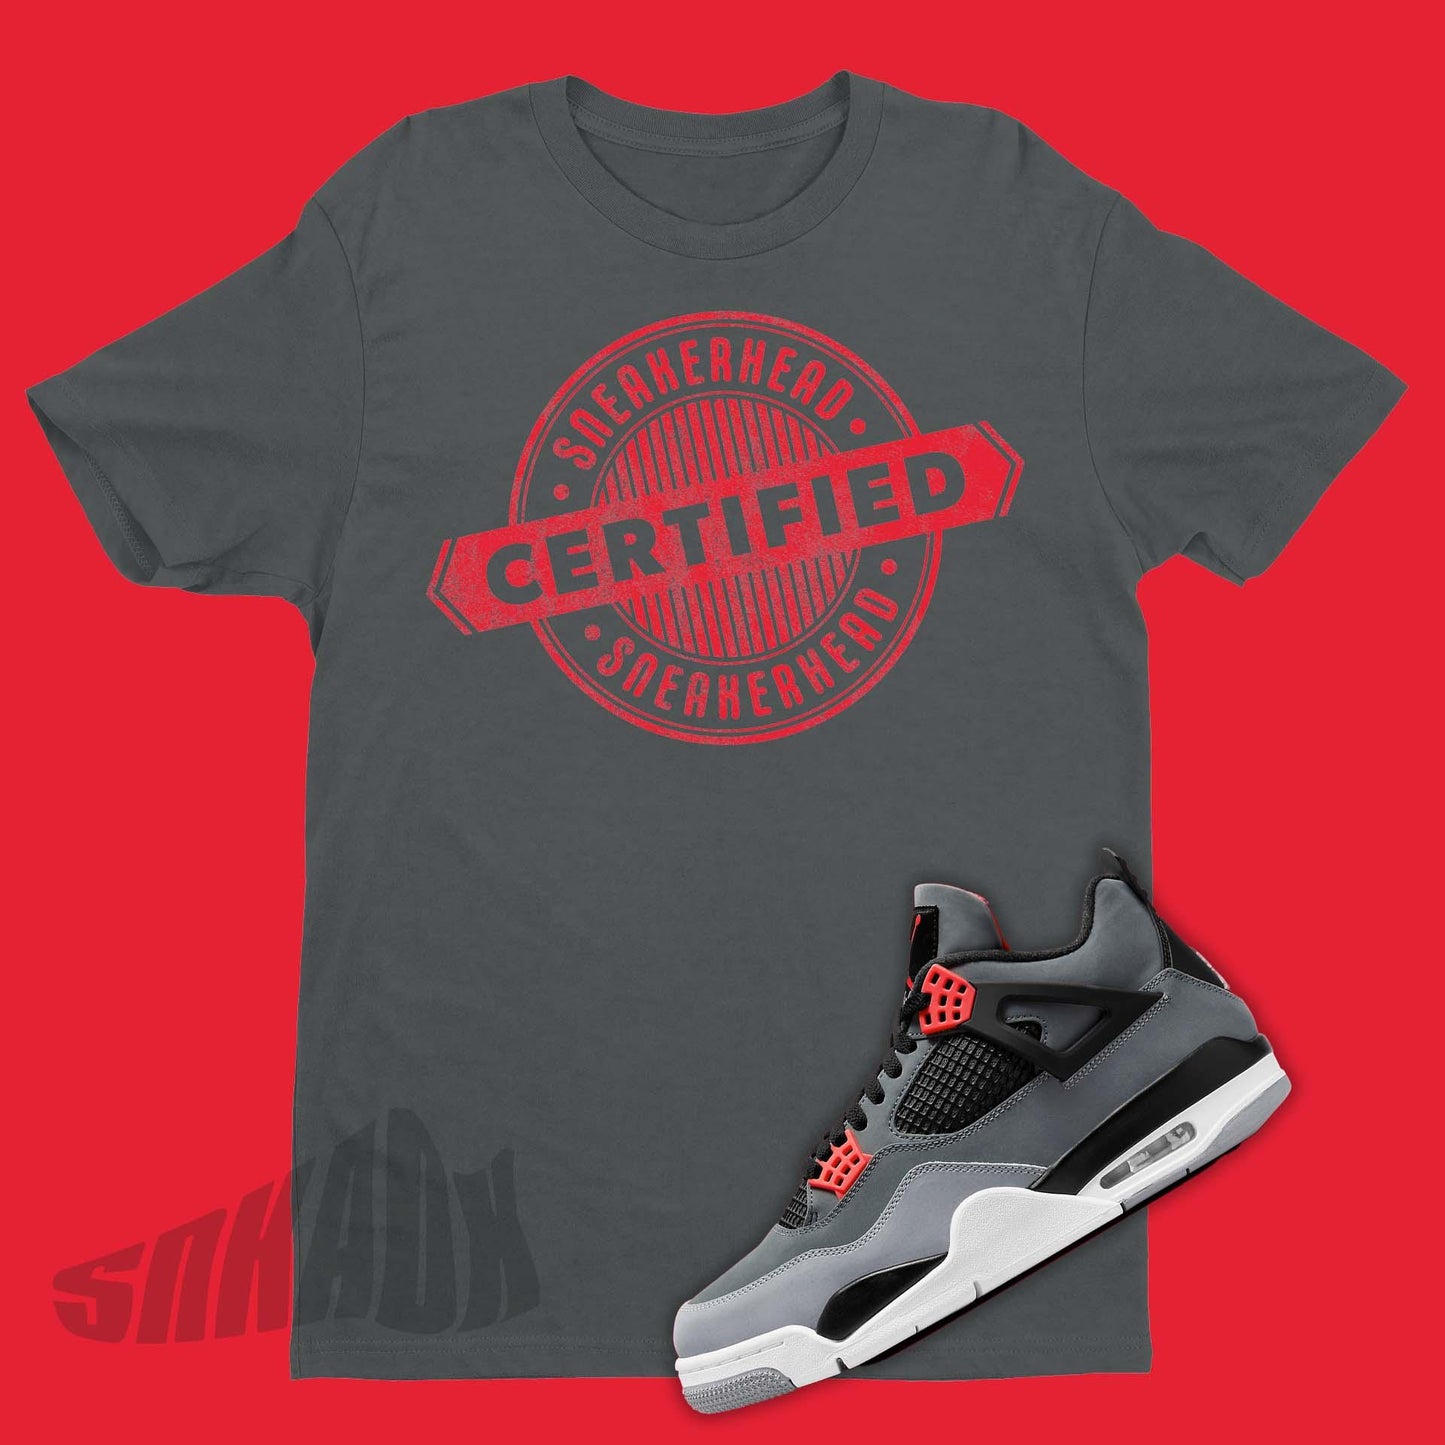 Certified Sneaker Head Shirt To Match Air Jordan 4 Infrared 23